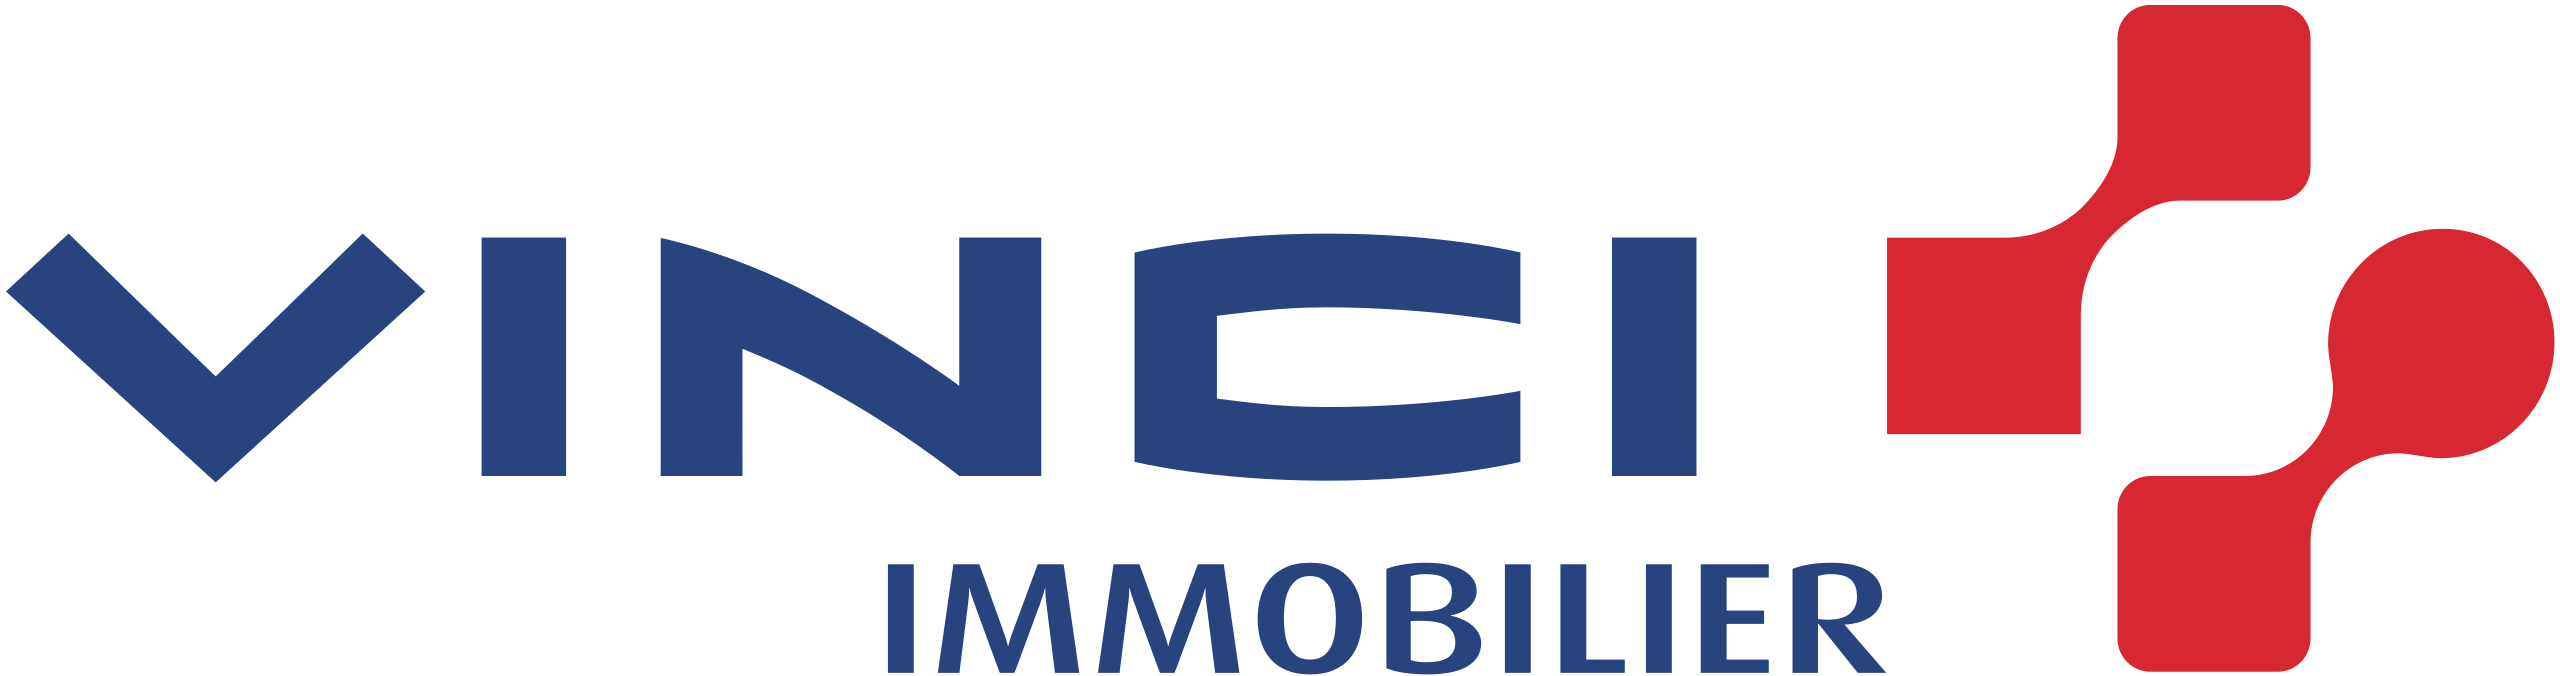 Vinci Immobilier logo